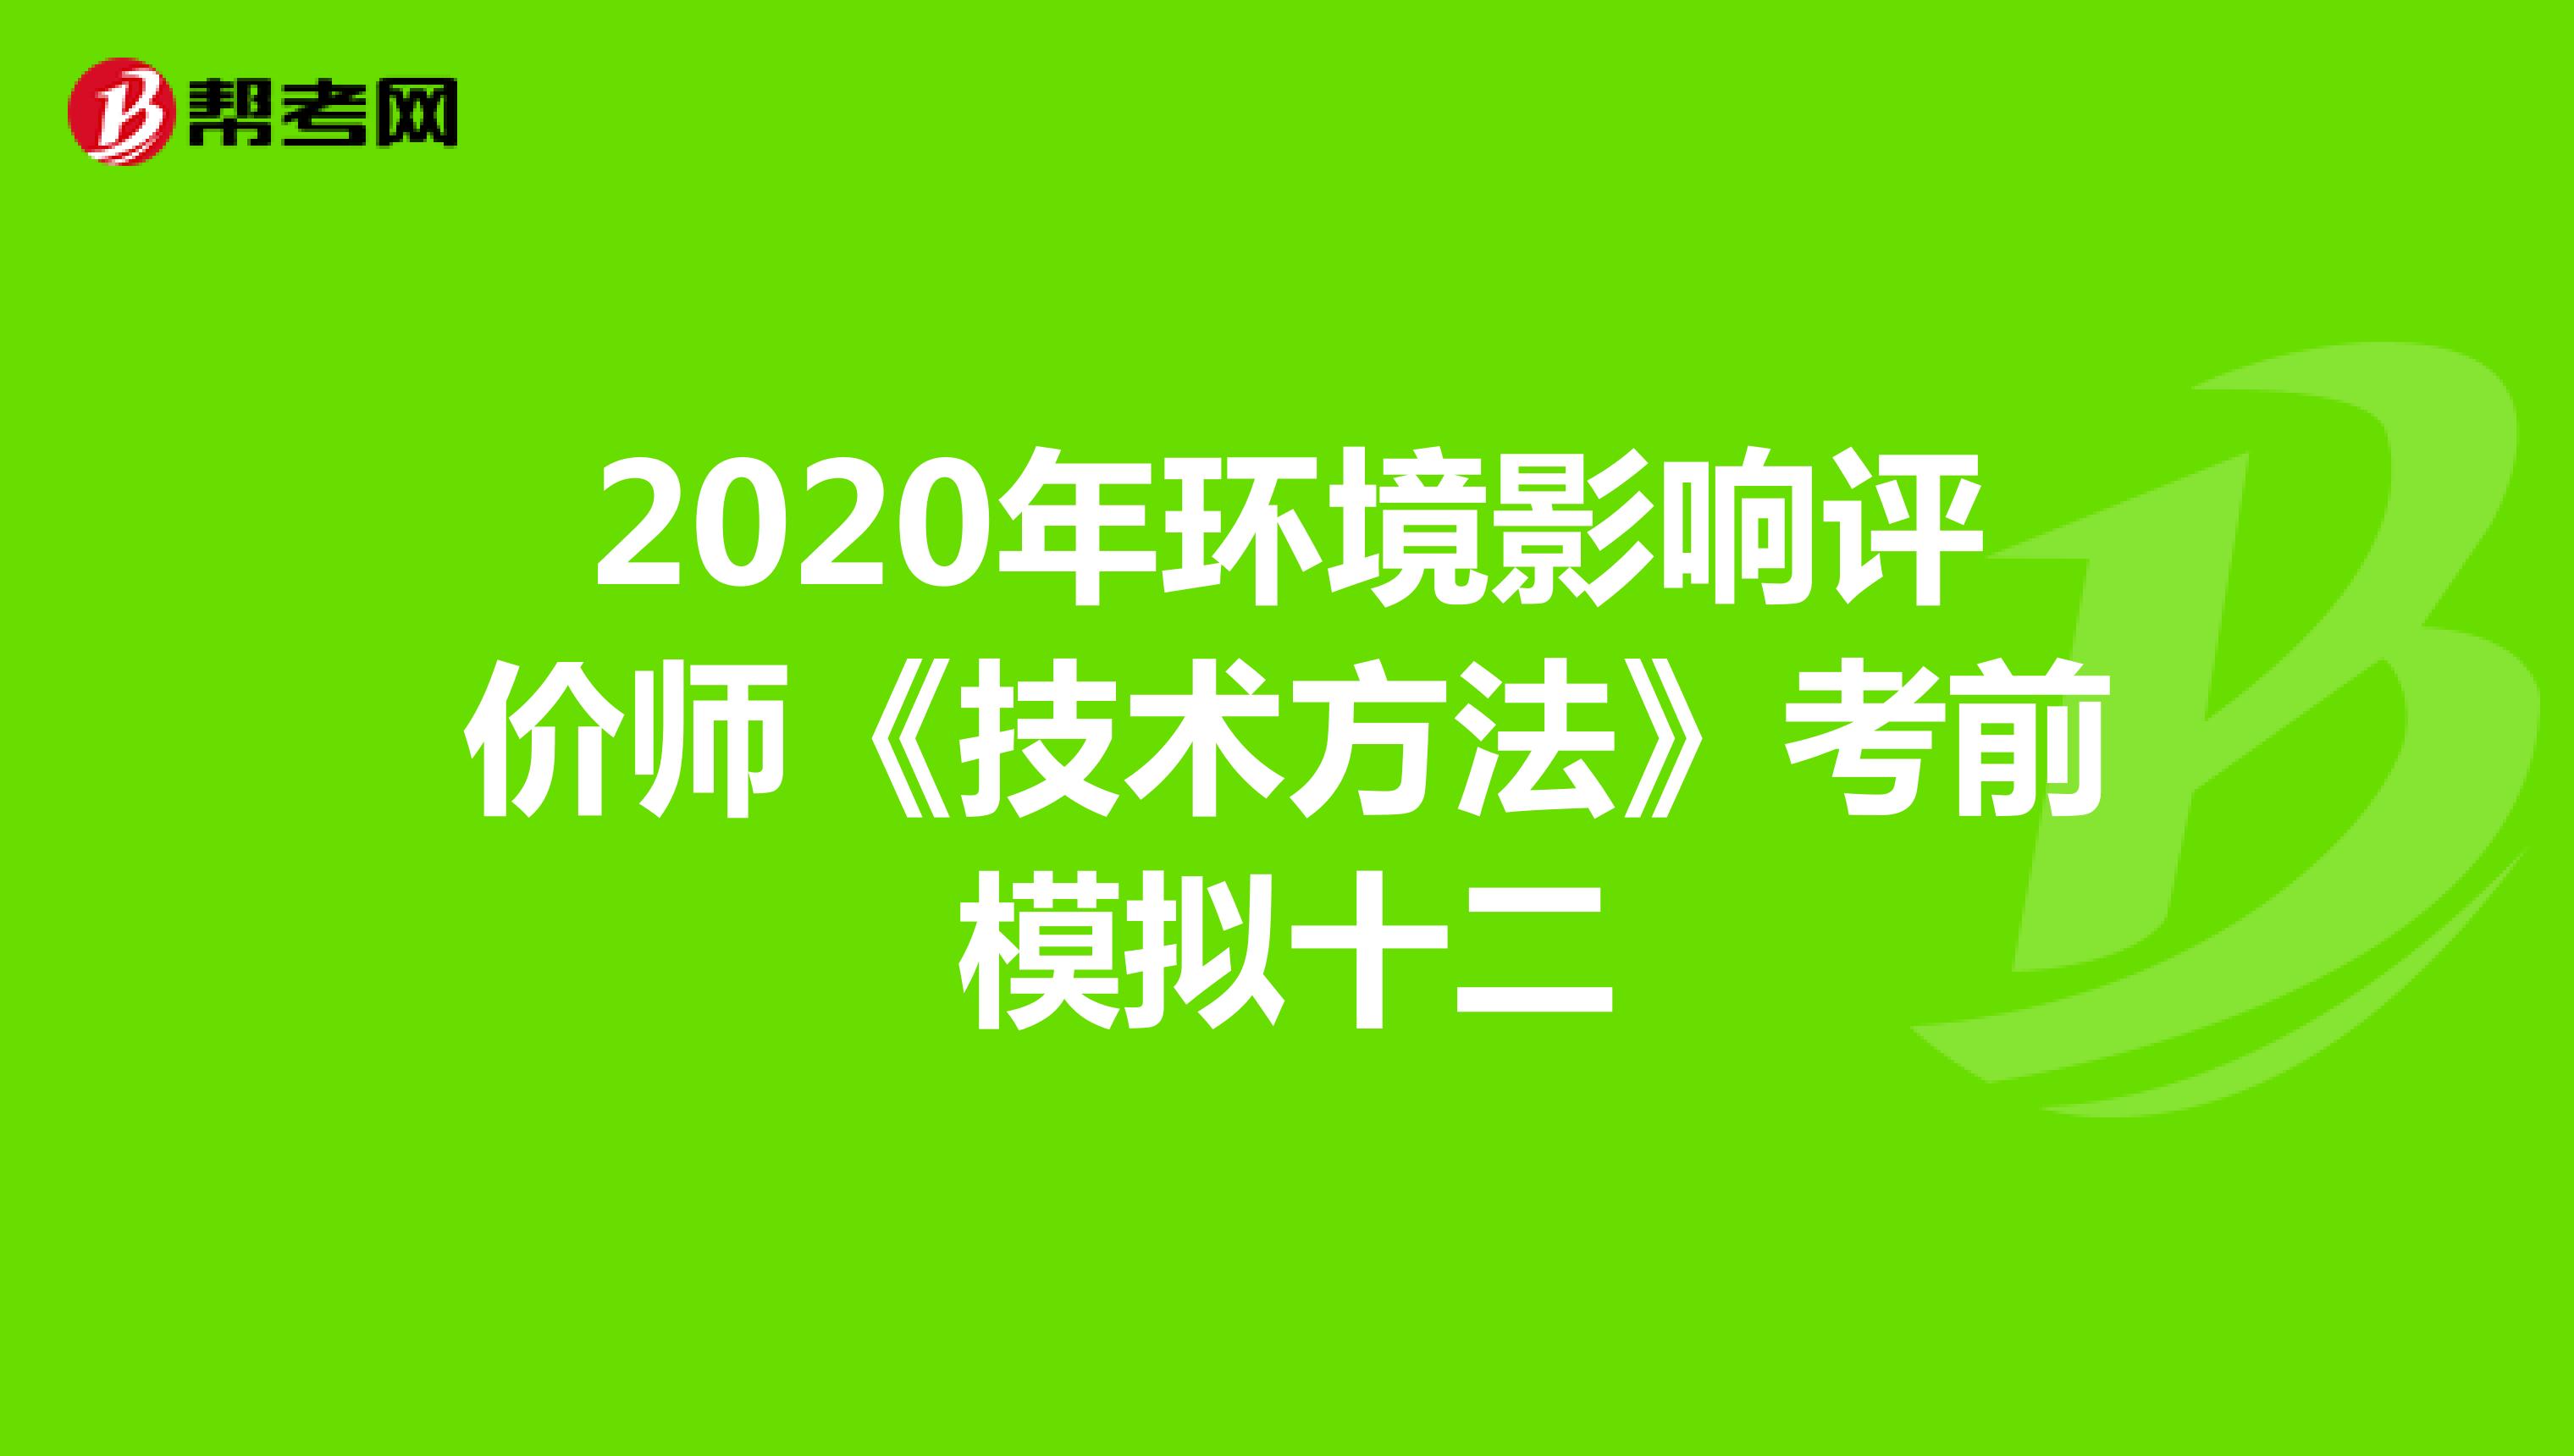 2020年环境影响评价师《技术方法》考前模拟十二